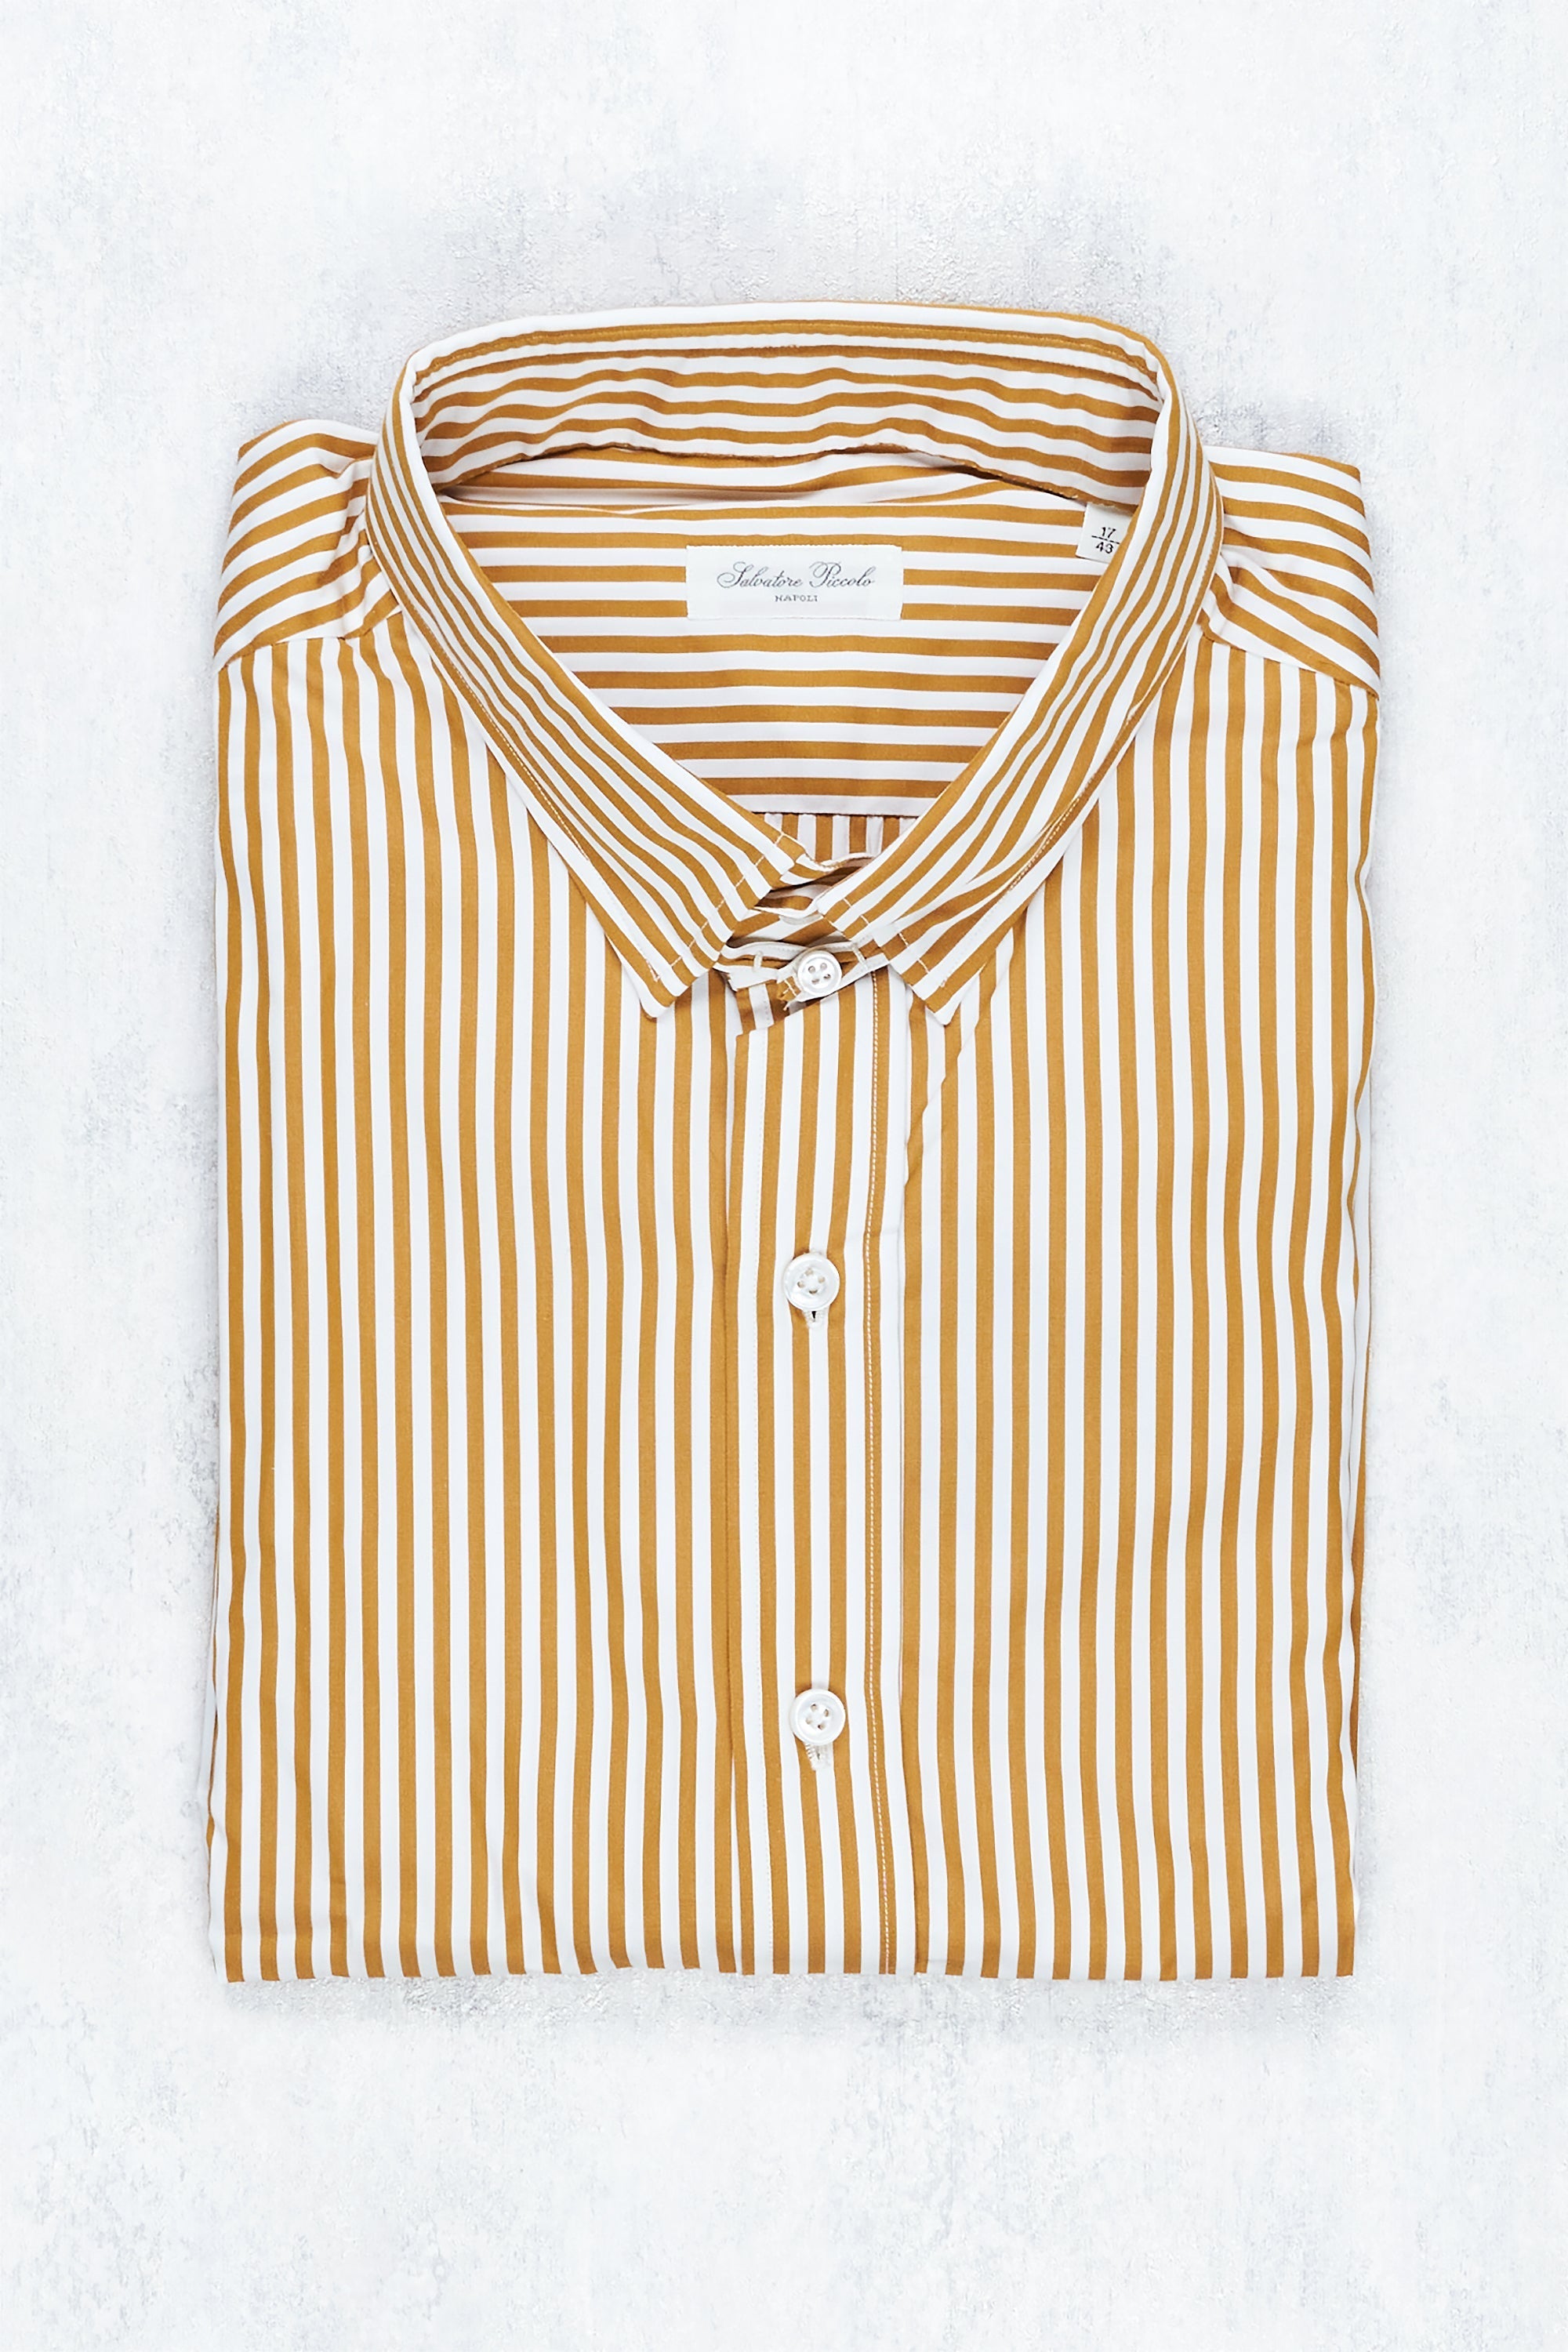 Salvatore Piccolo Mustard/White Stripe Cotton Spread Collar Shirt